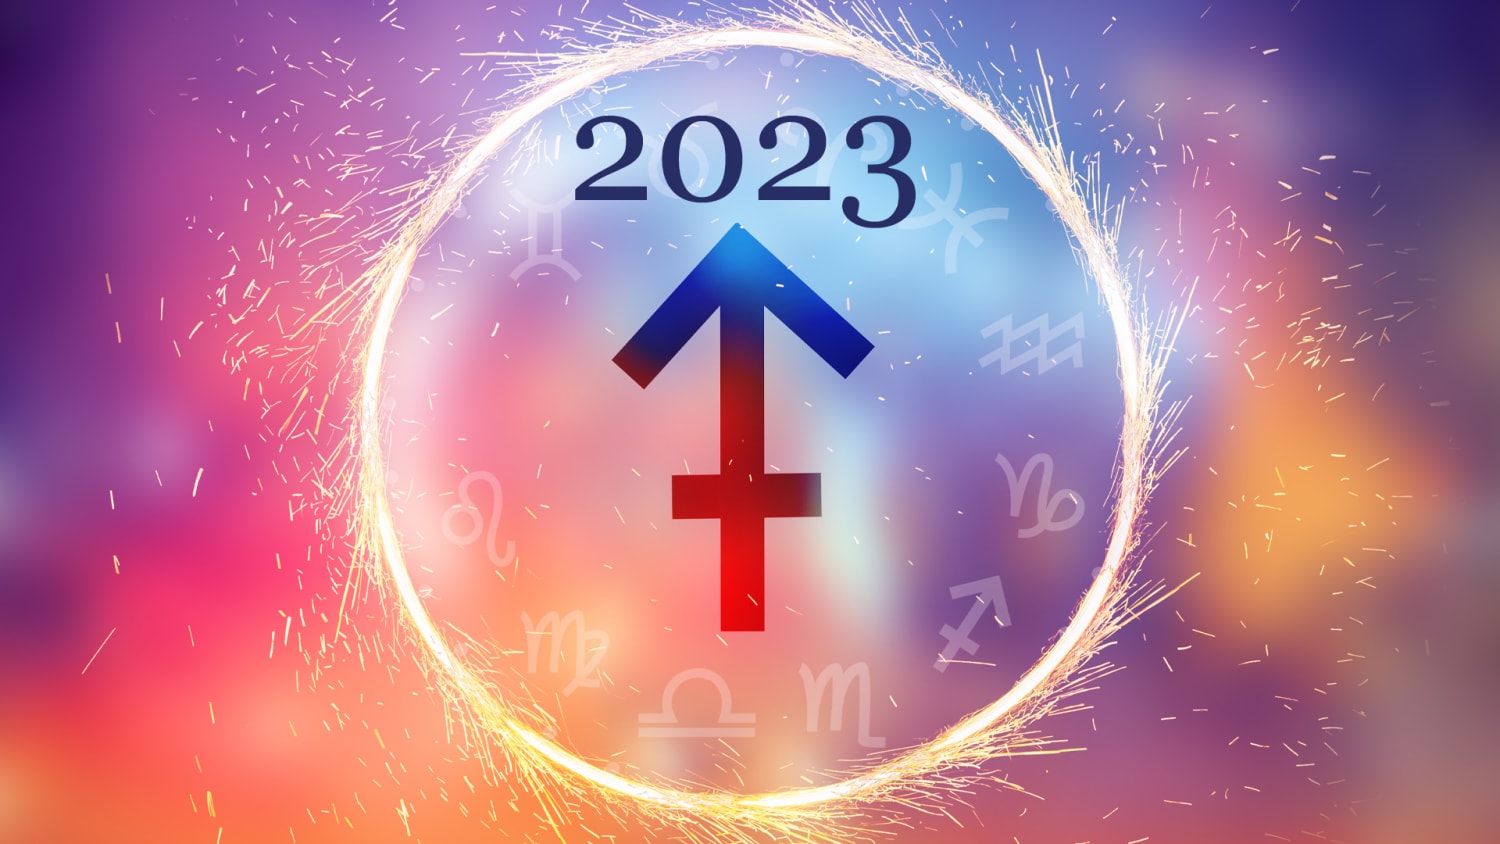 REVISTA VANIDADES HOROSCOPOS 2022 ESPECIAL DE ASTROLOGIA *HOROSCOPO CHINO*  NEW